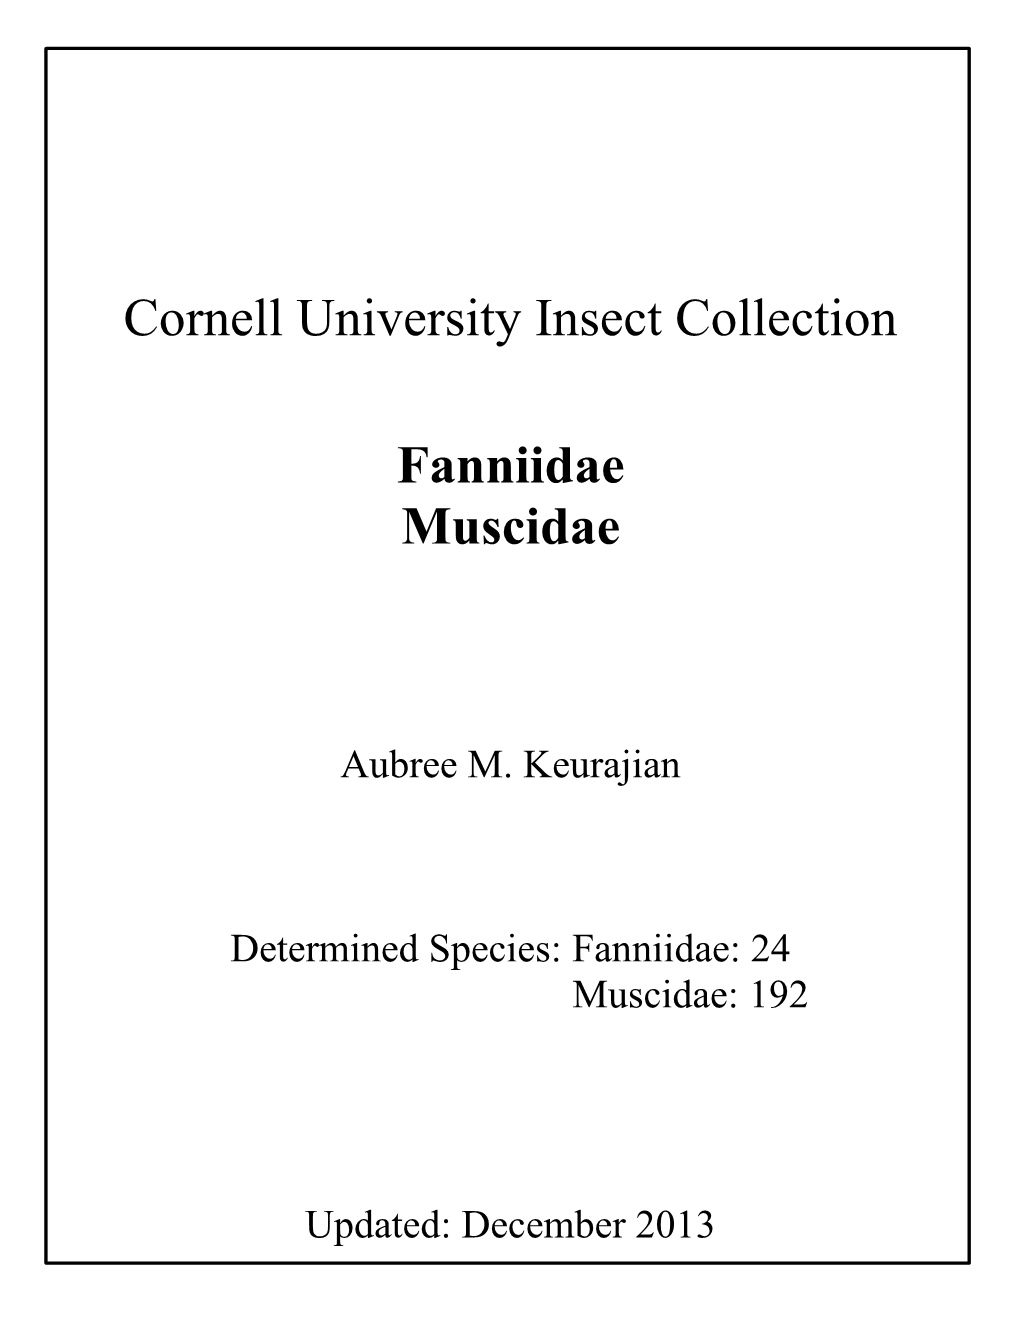 Muscidae Fanniidae List